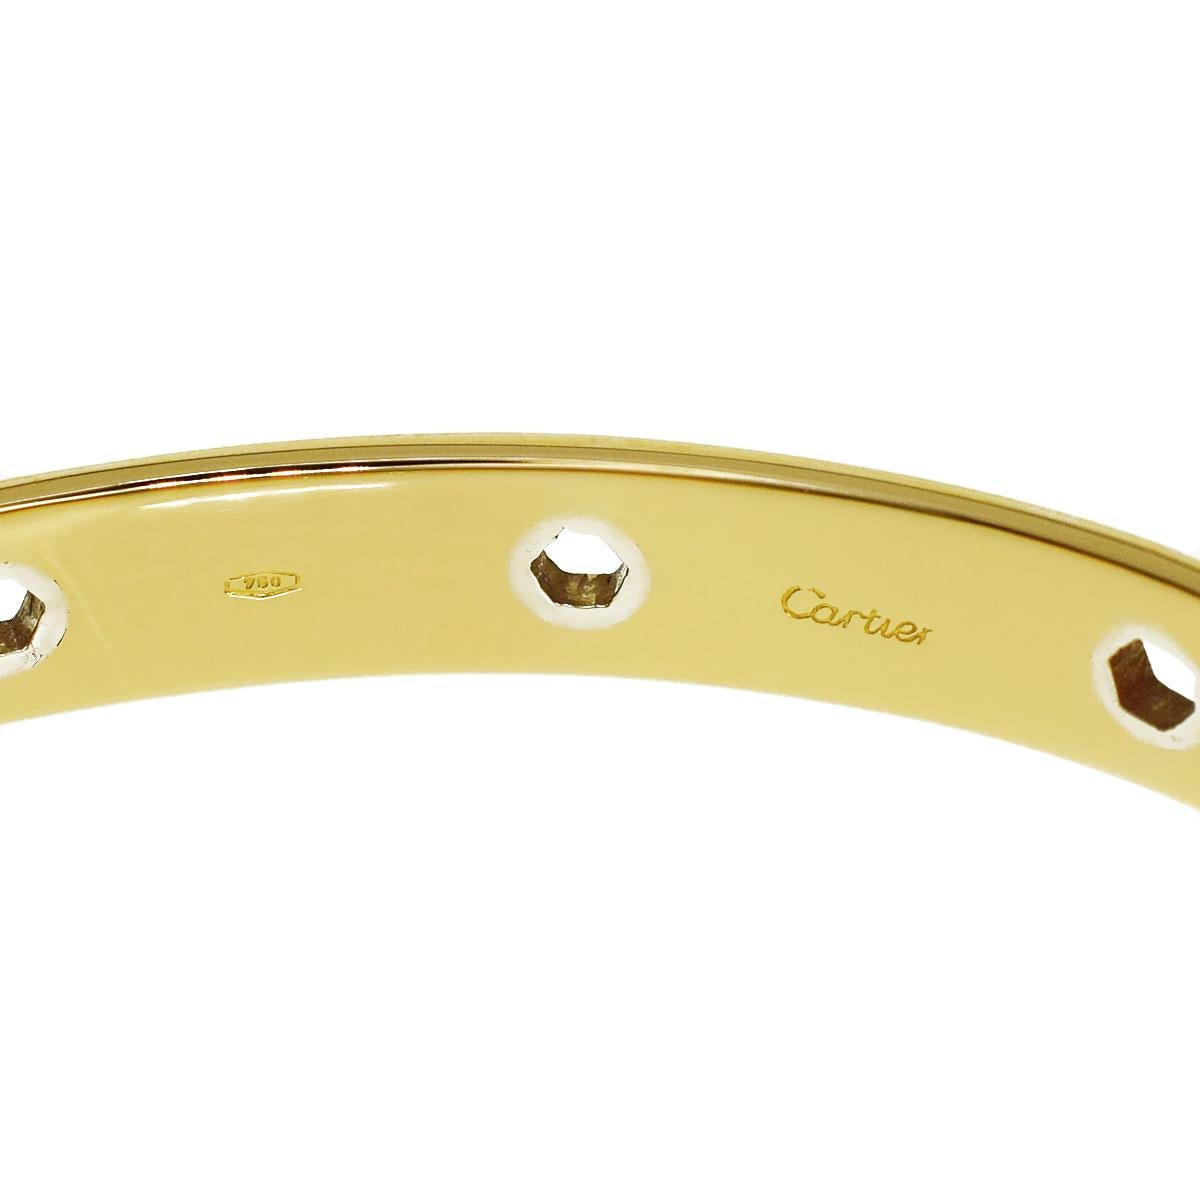 Ein unglaublich seltenes Cartier-Armband aus Gelbgold der Serie Love mit sechseckigen Motiven aus Weißgold, eingebettet in 18 Karat Gelbgold. Das Armband misst 16cm, 6.29 